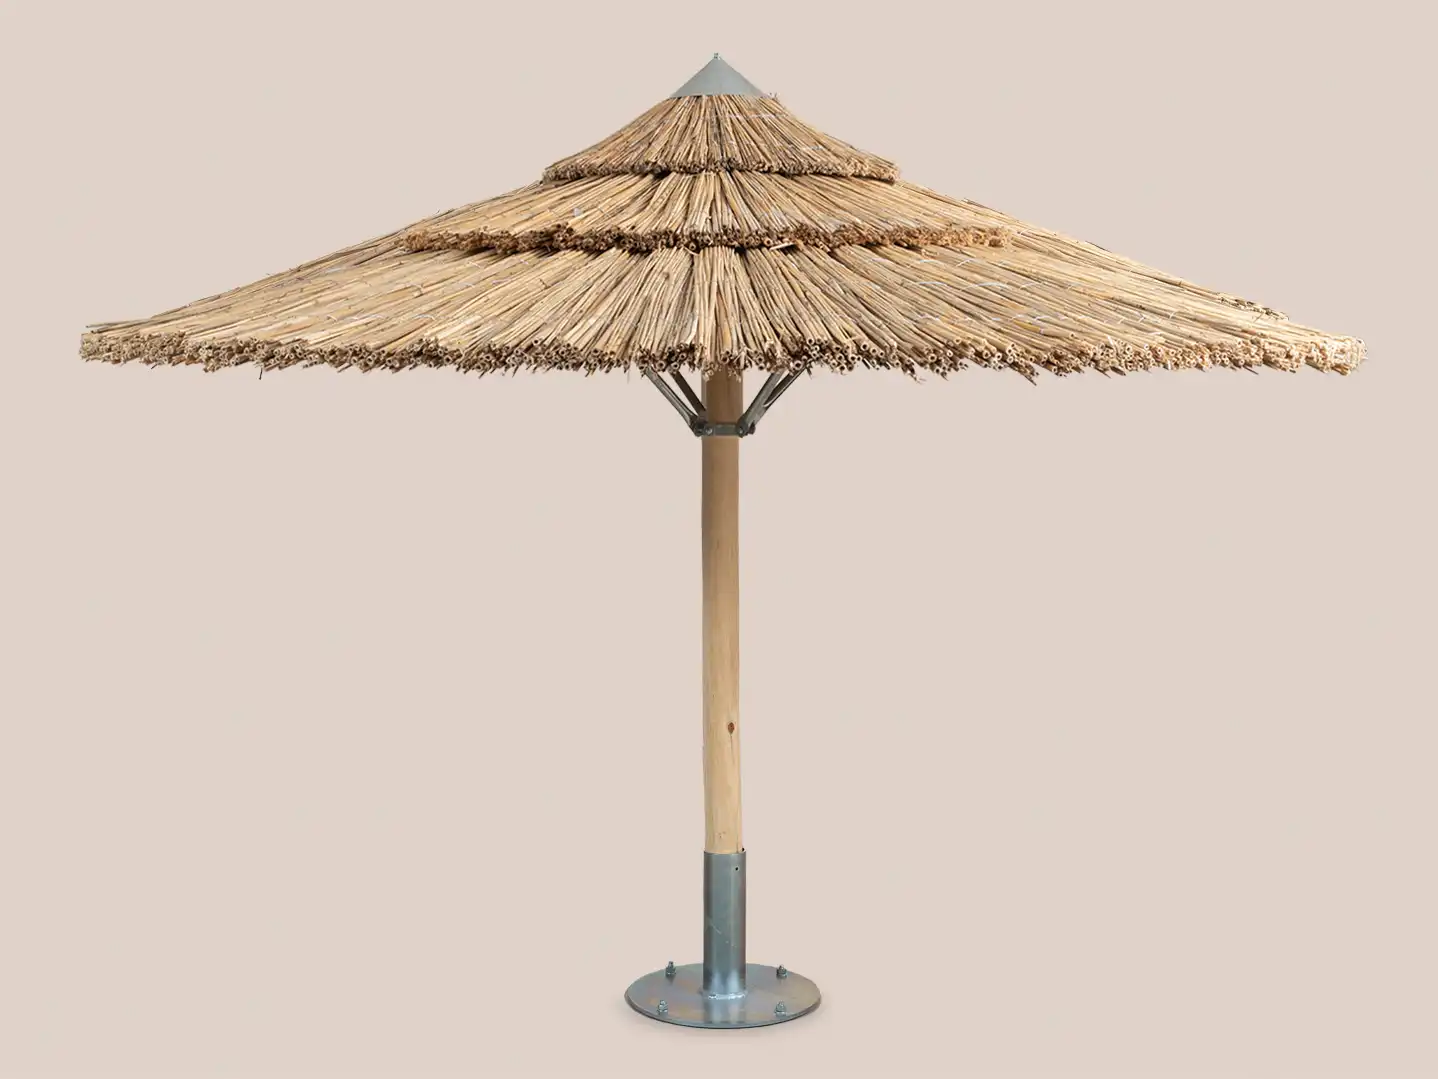 Κατασκευή ψάθινης ομπρέλας παραλίας για beach bar και ξενοδοχία.